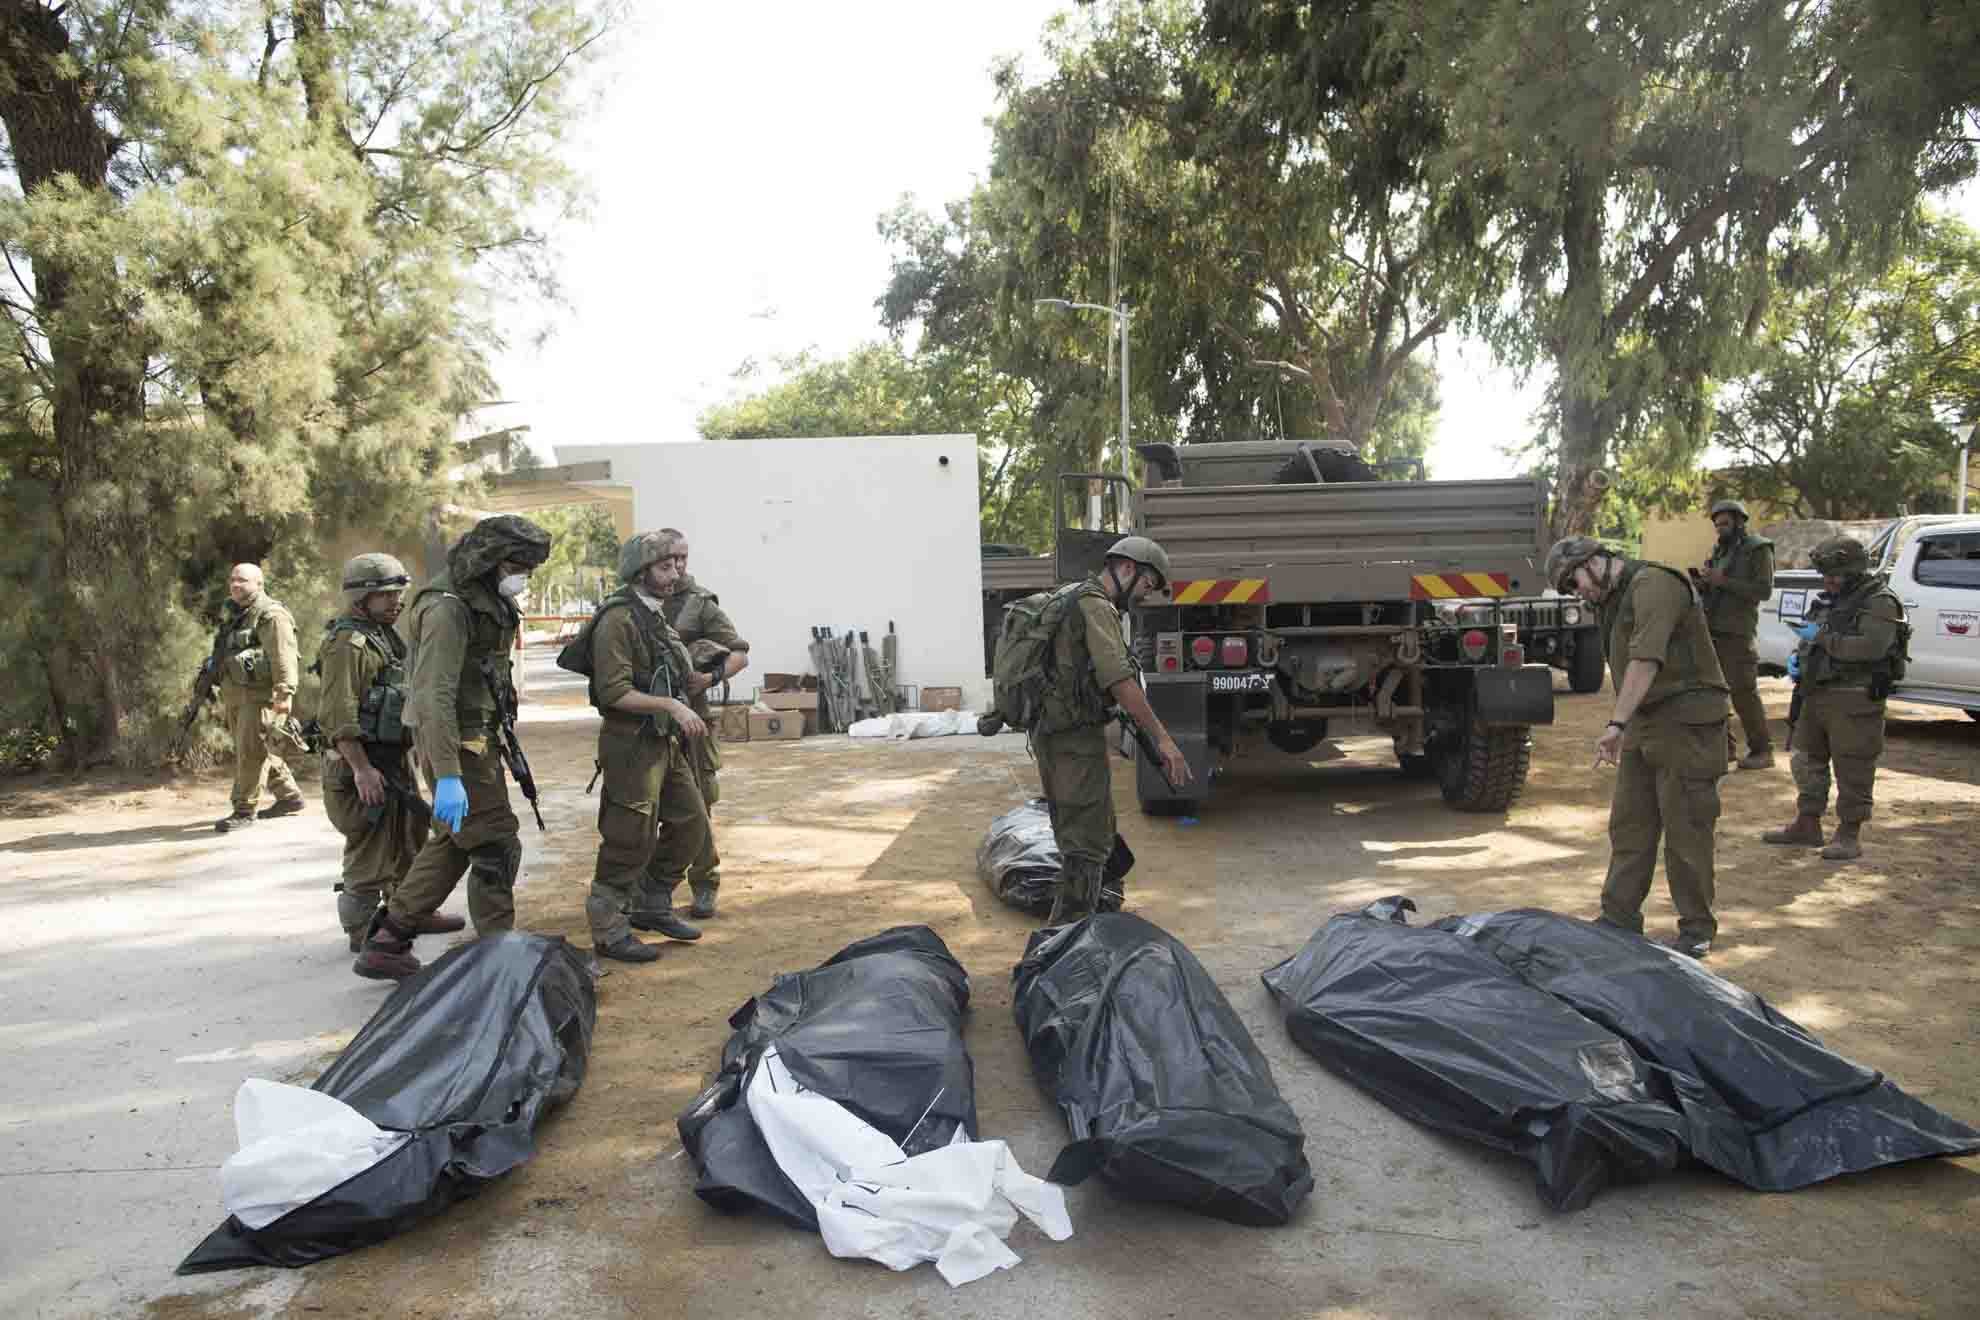 Soldados israelenses removem os corpos de civis, que foram mortos dias antes em um ataque de militantes palestinos neste kibutz perto da fronteira com Gaza - Metrópoles